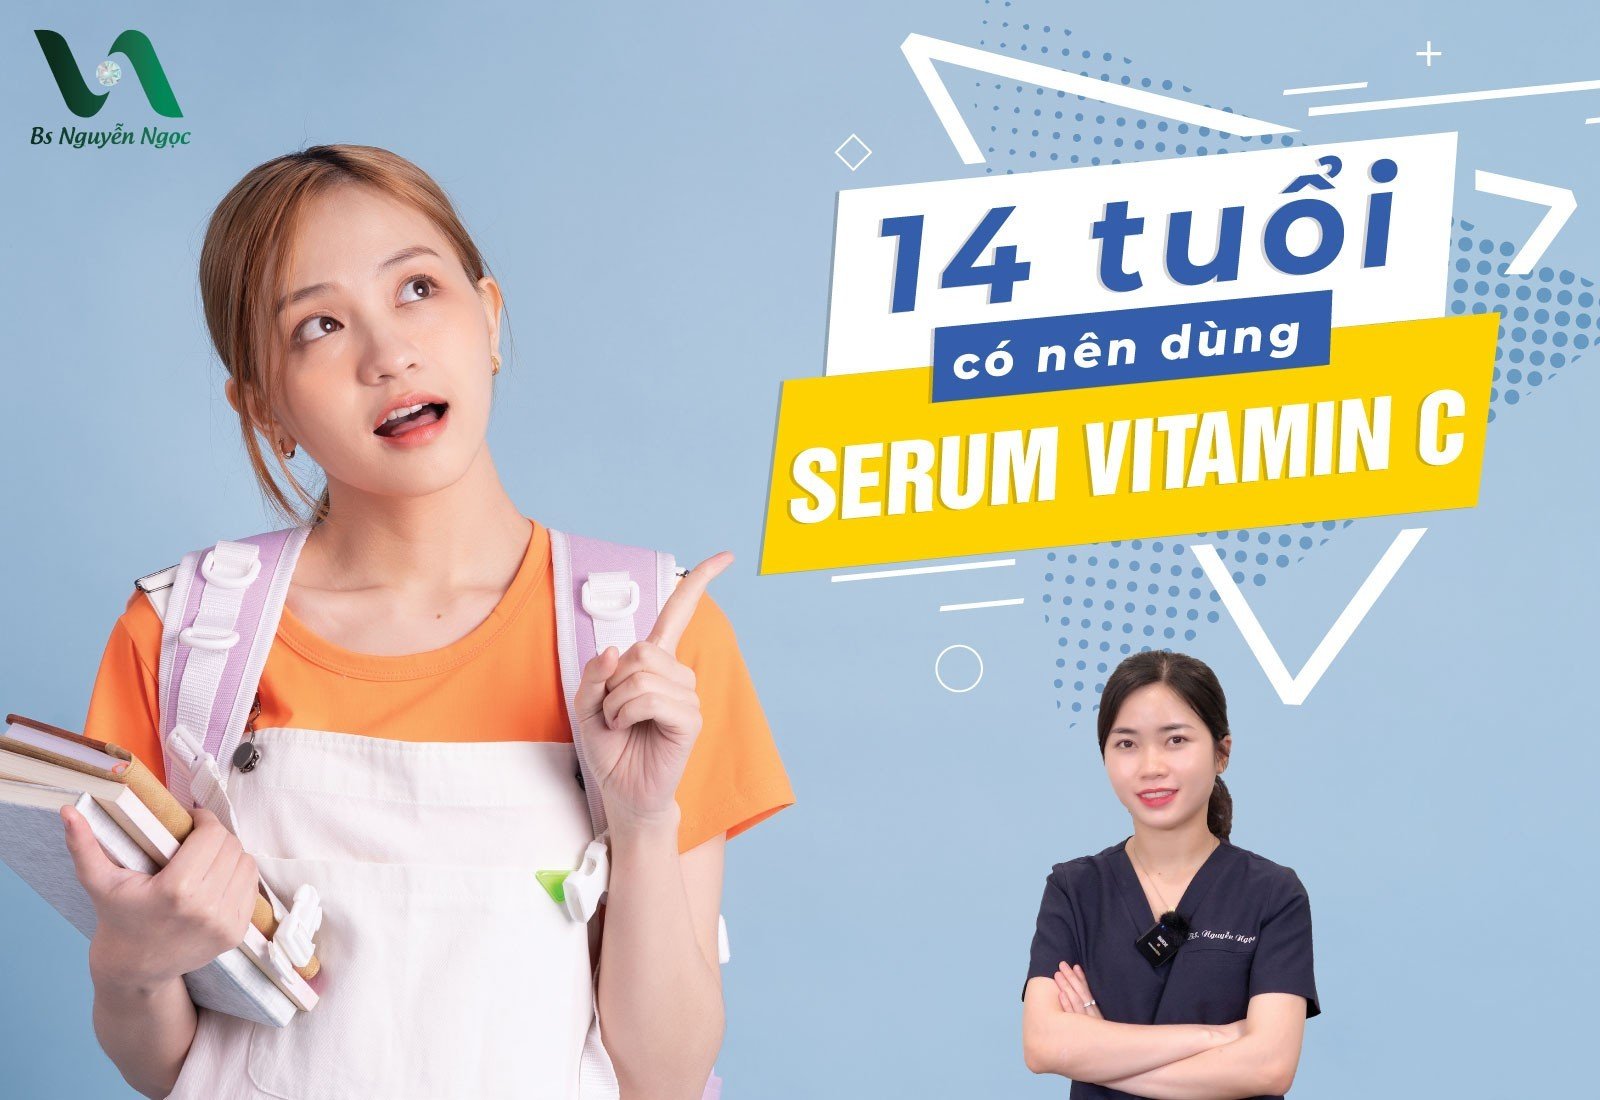 14 tuổi có nên dùng serum vitamin c không?